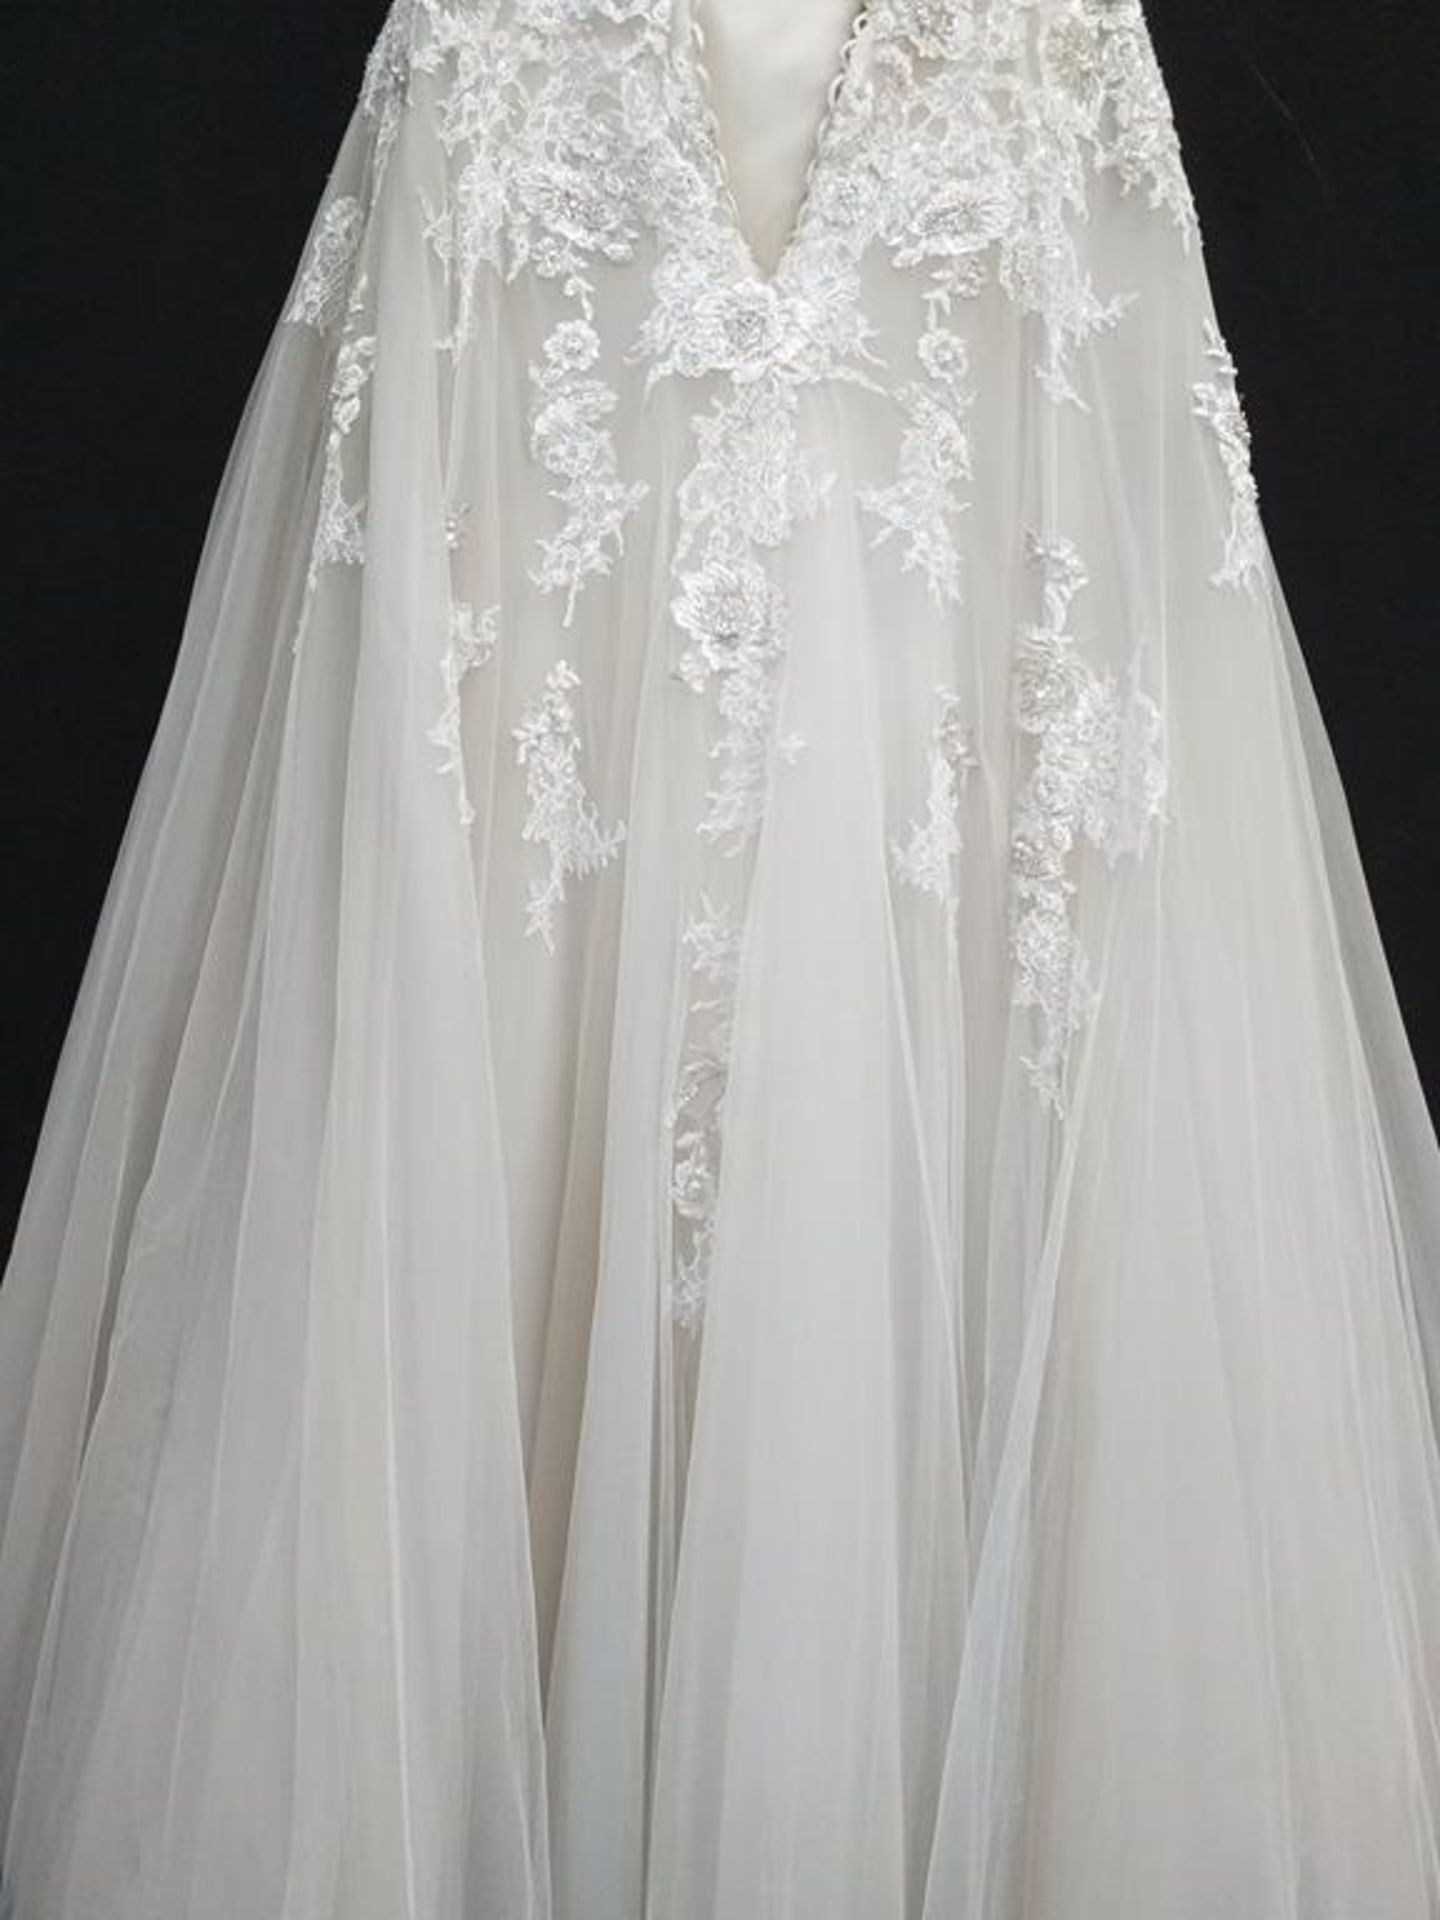 Le Papillion Toronto wedding dress - Image 6 of 9